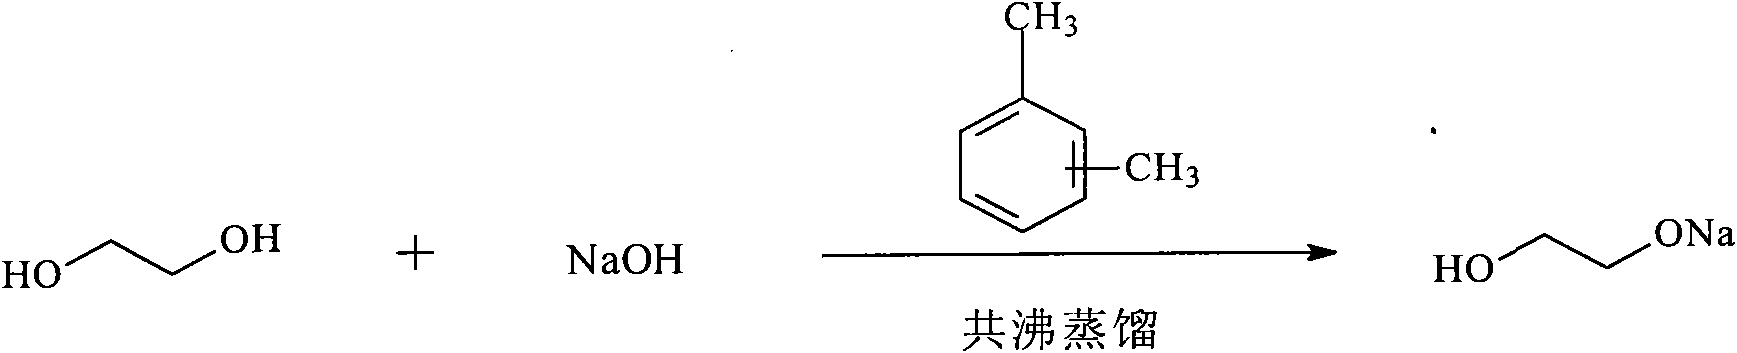 Method for synthesizing 1,4-dioxane-2-ketone by ethylene glycol